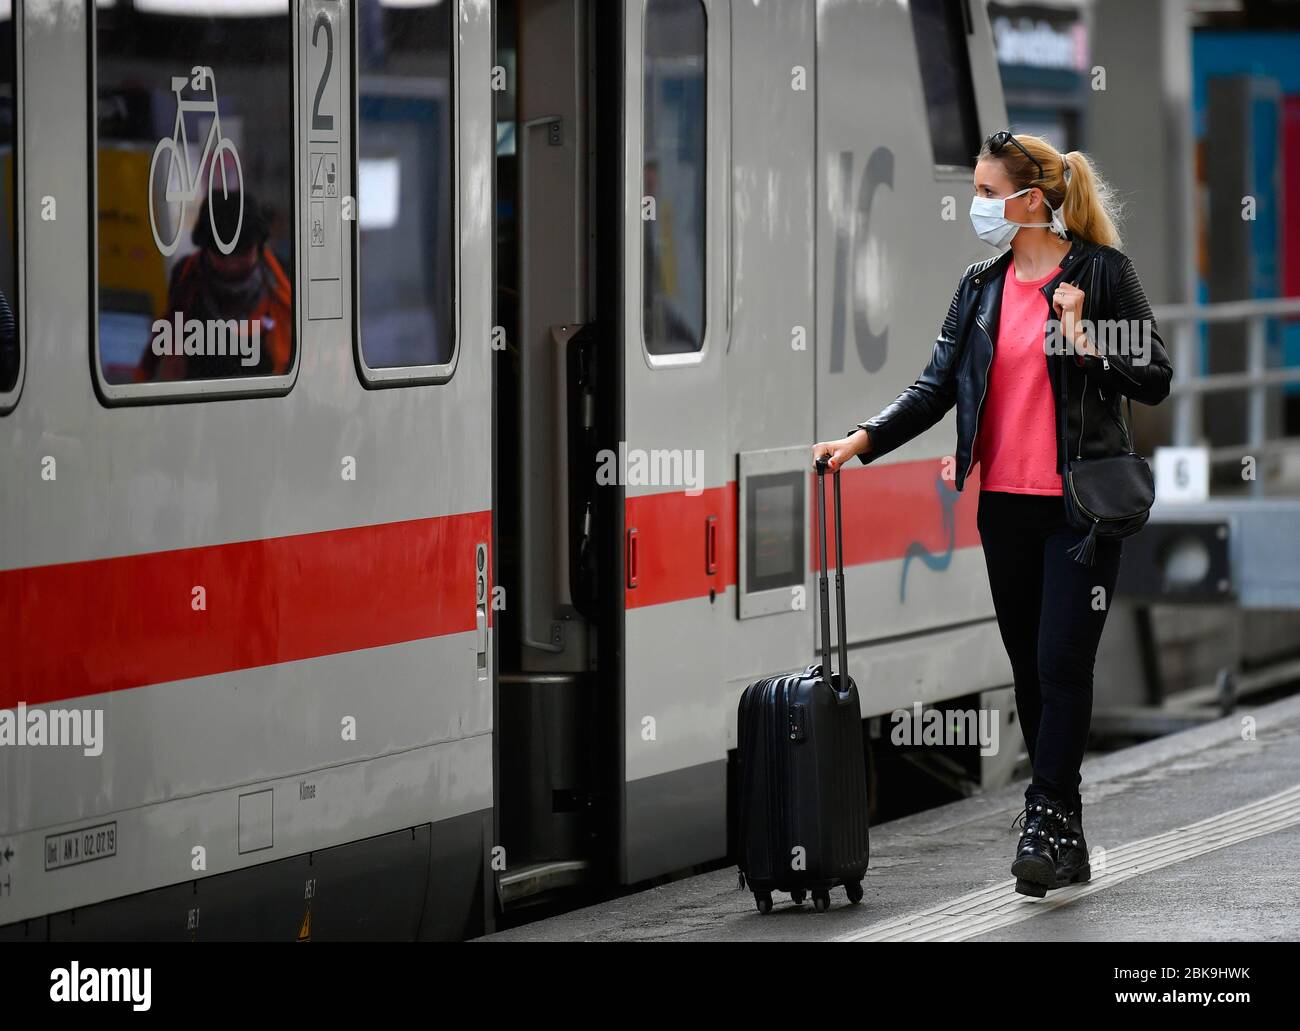 Frau mit Gesichtsmaske, Warten auf Zug, Corona-Krise, Hauptbahnhof, Stuttgart, Baden-Württemberg, Deutschland Stockfoto